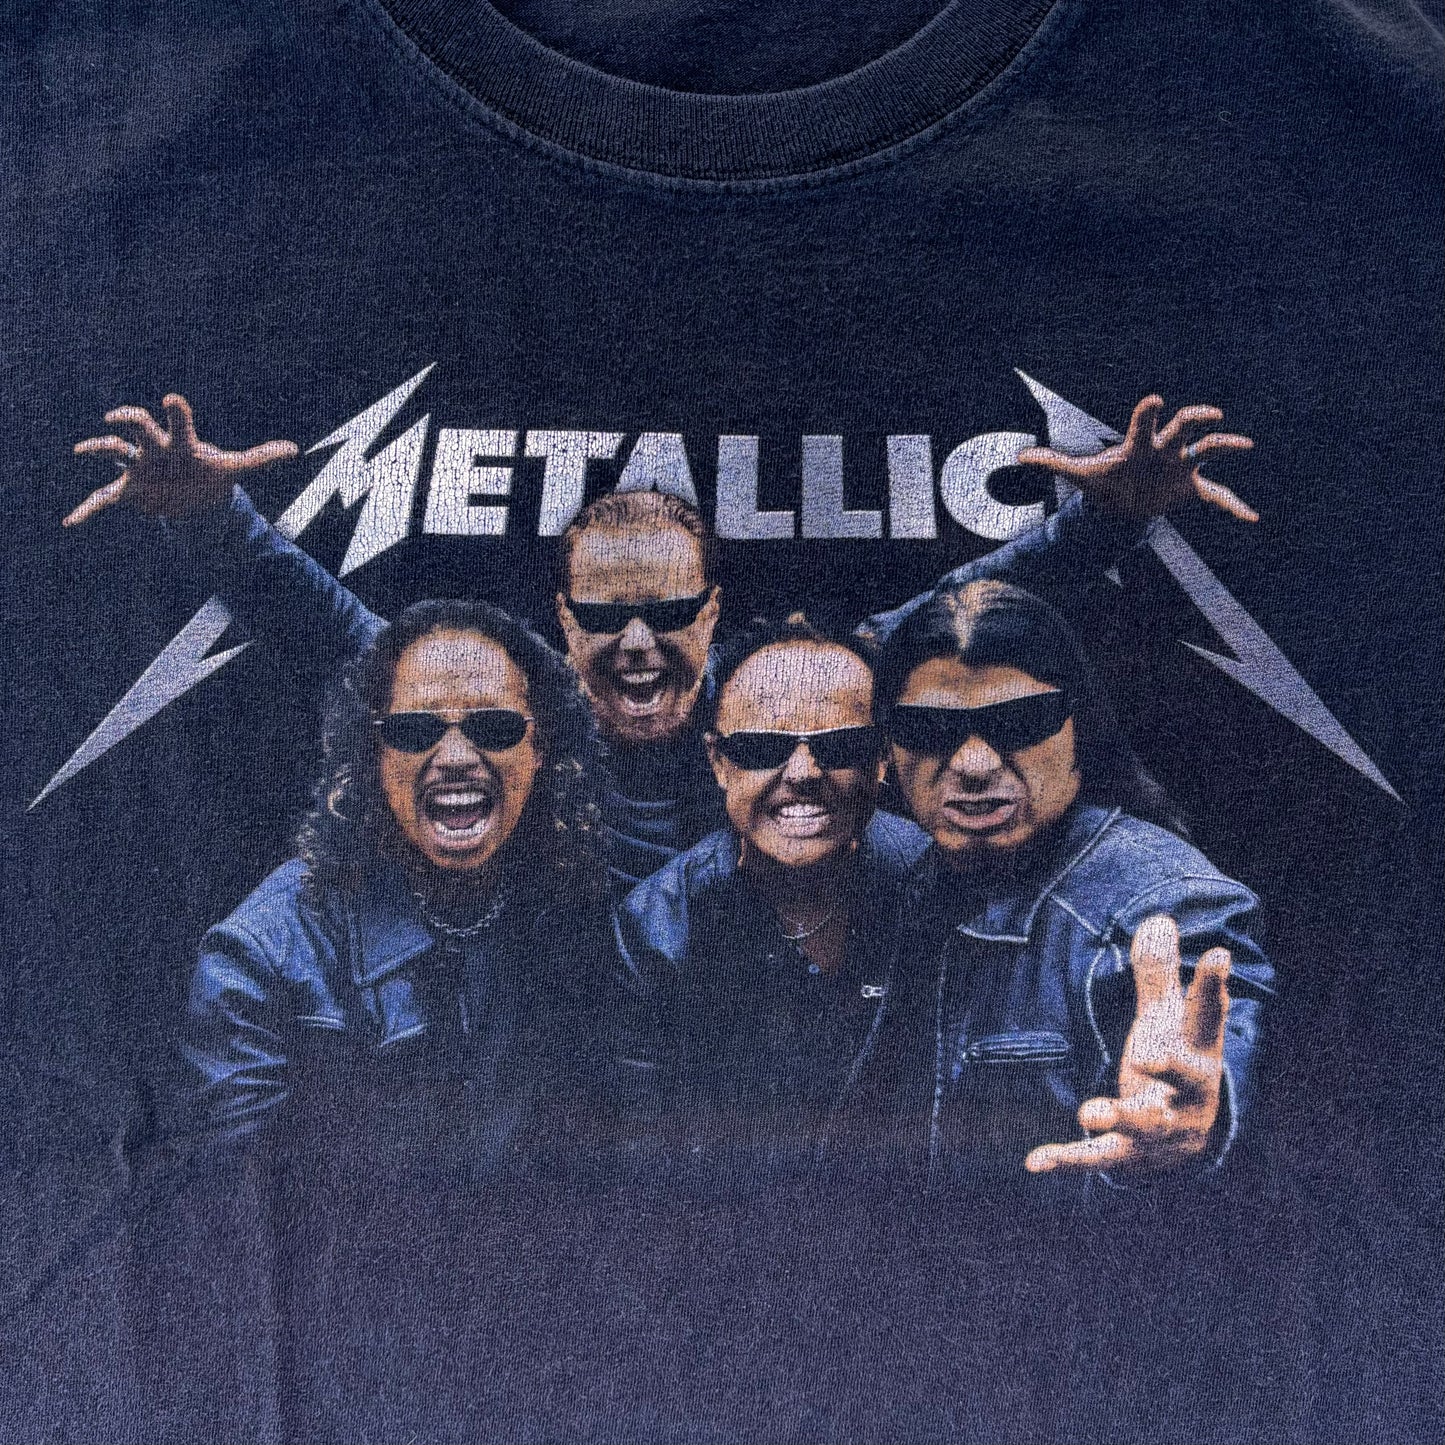 Metallica T-Shirt